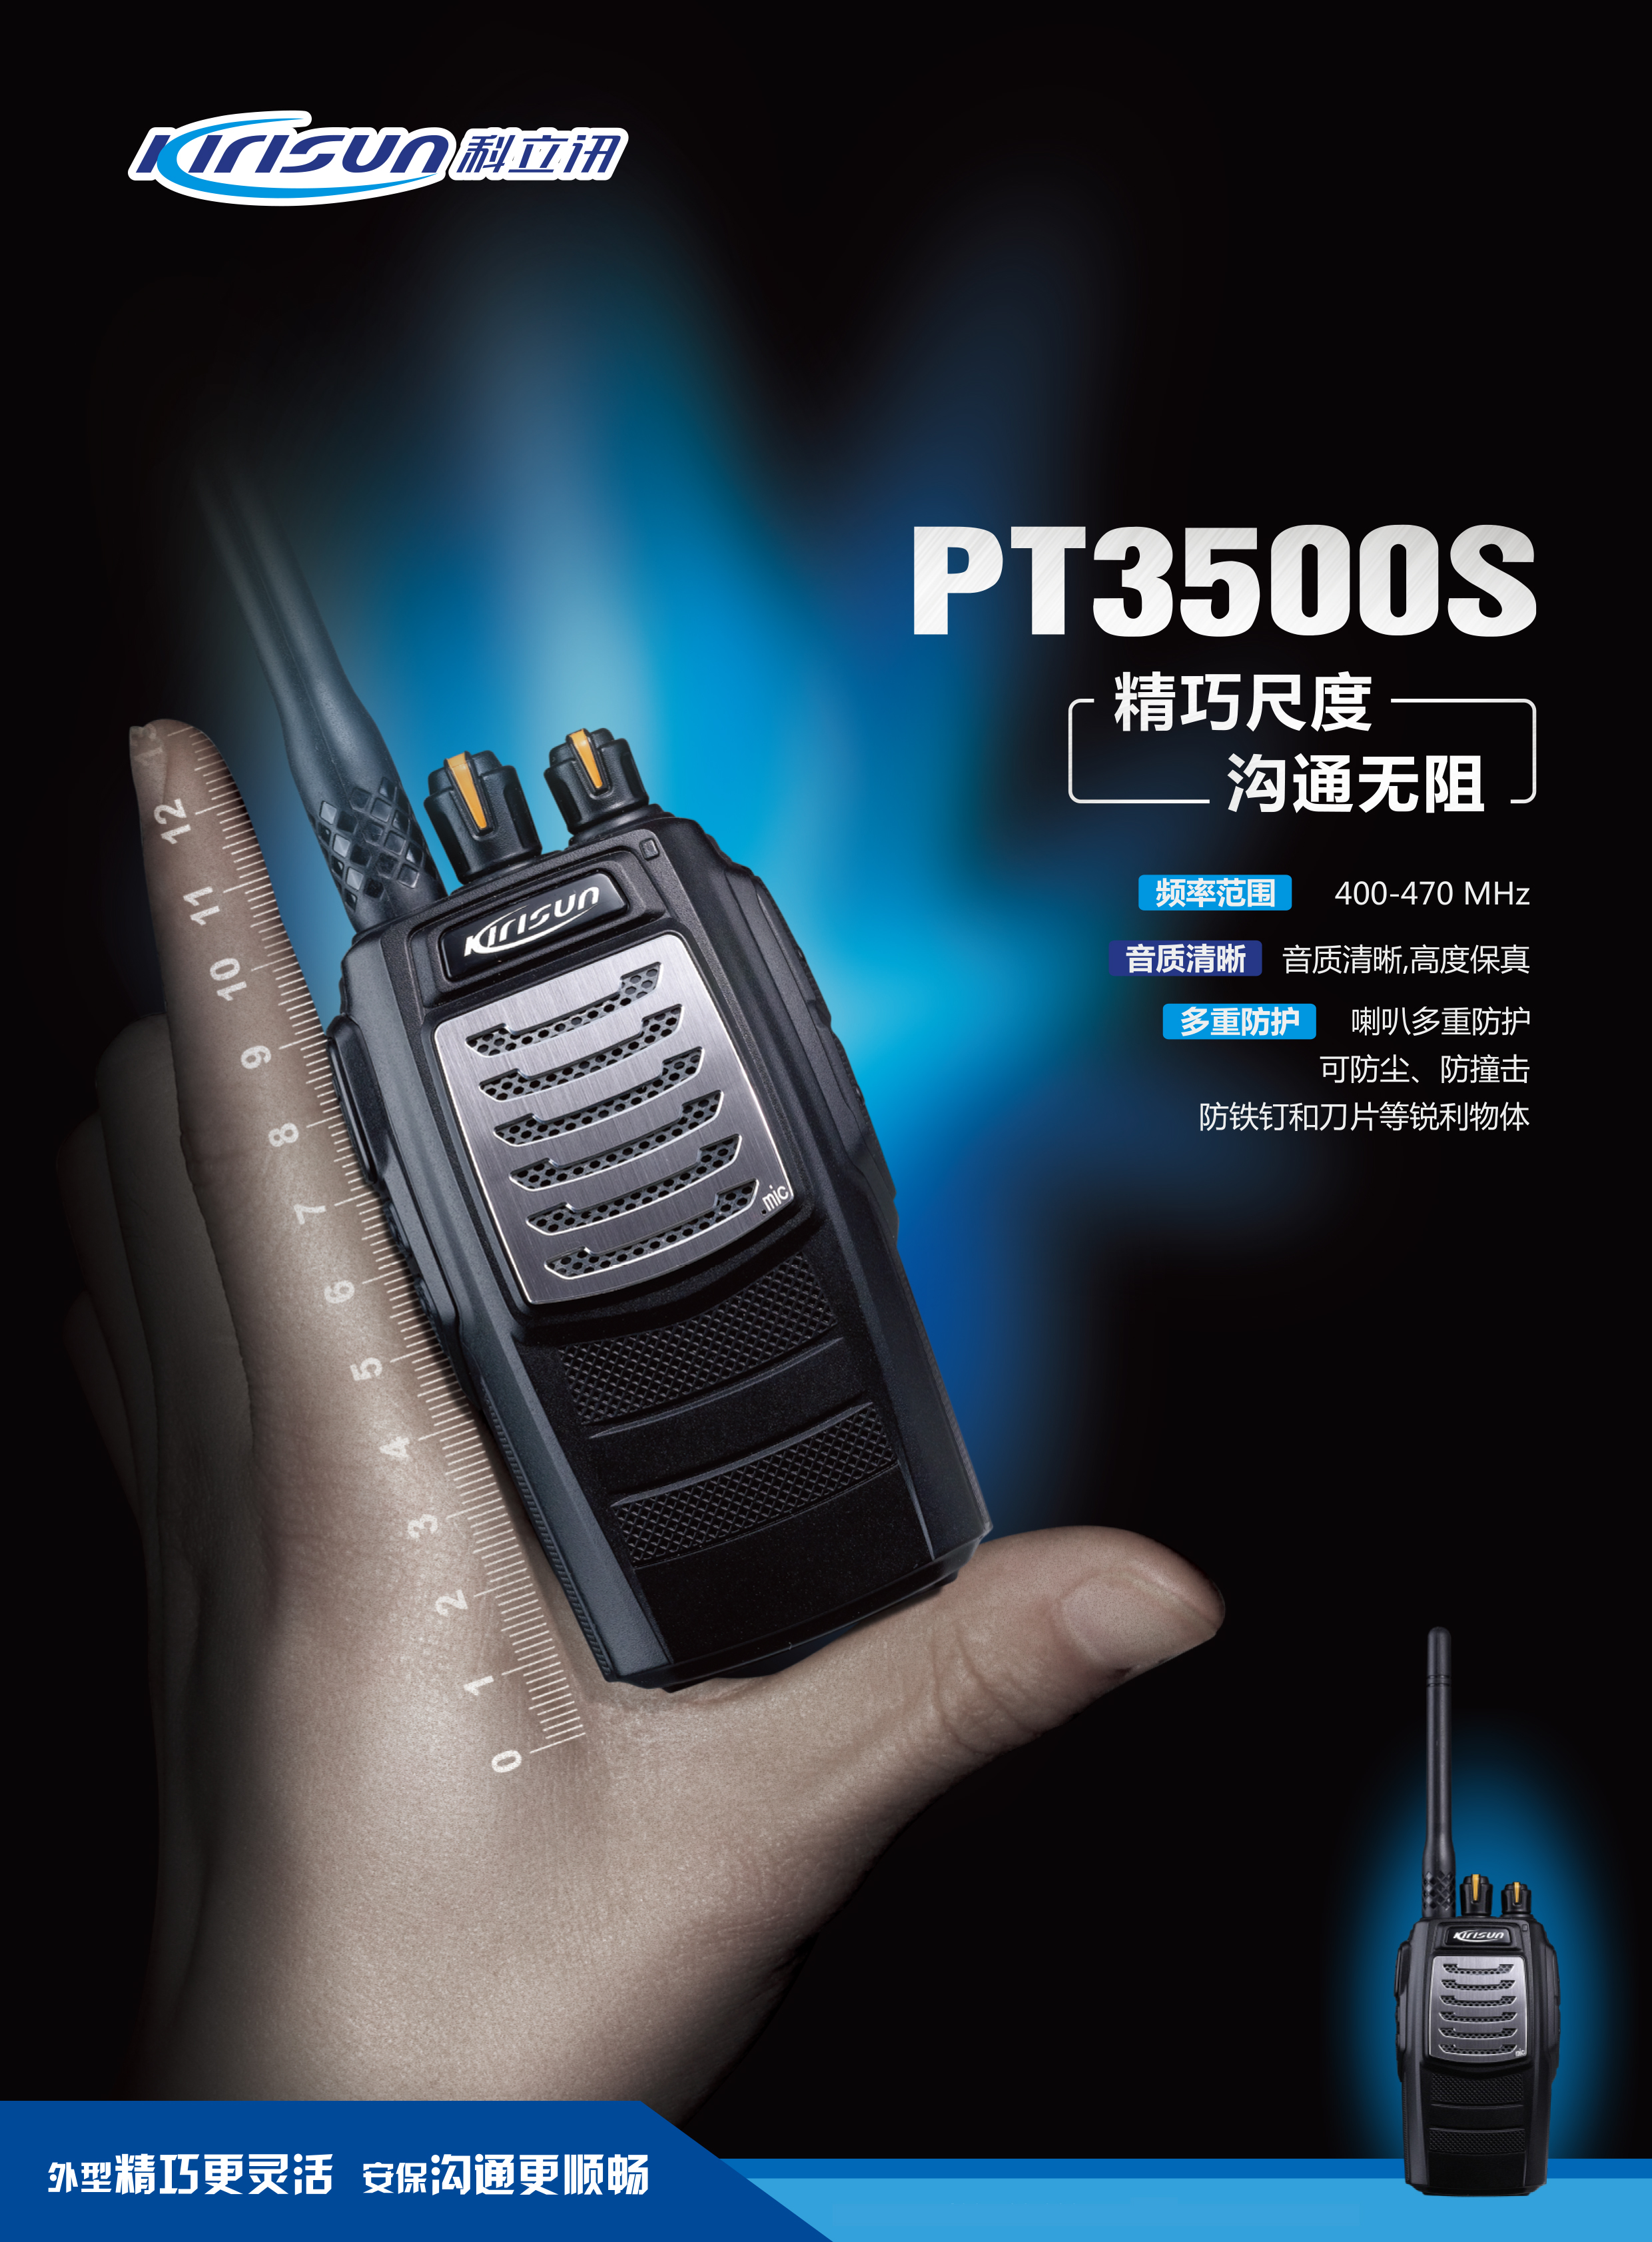 PT3500S中文彩页-1